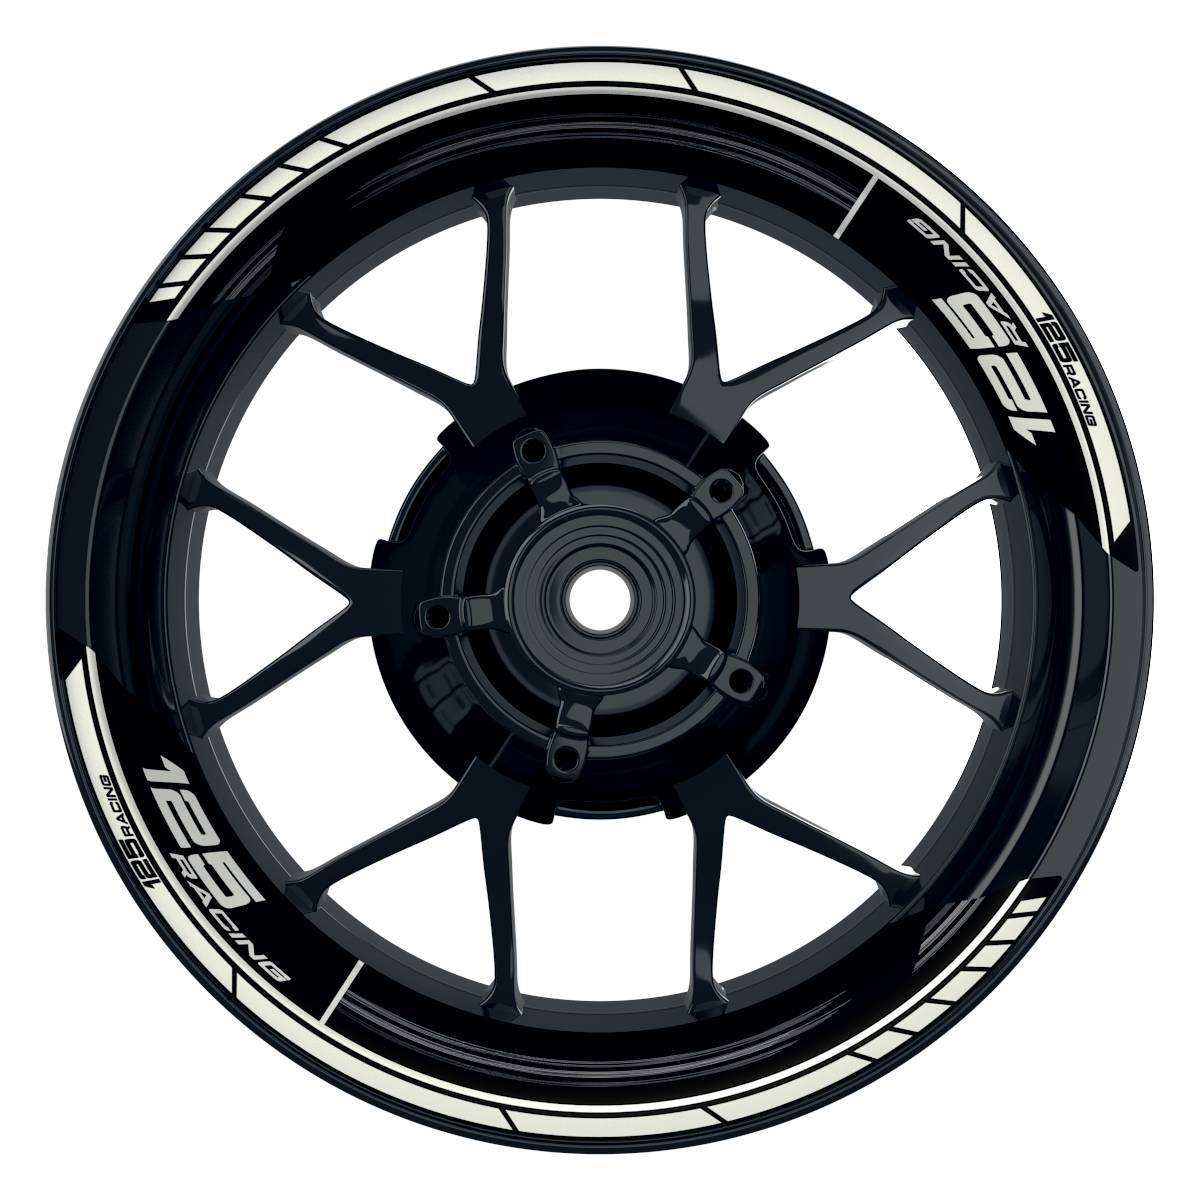 KTM Racing 125 Scratched schwarz weiss Frontansicht